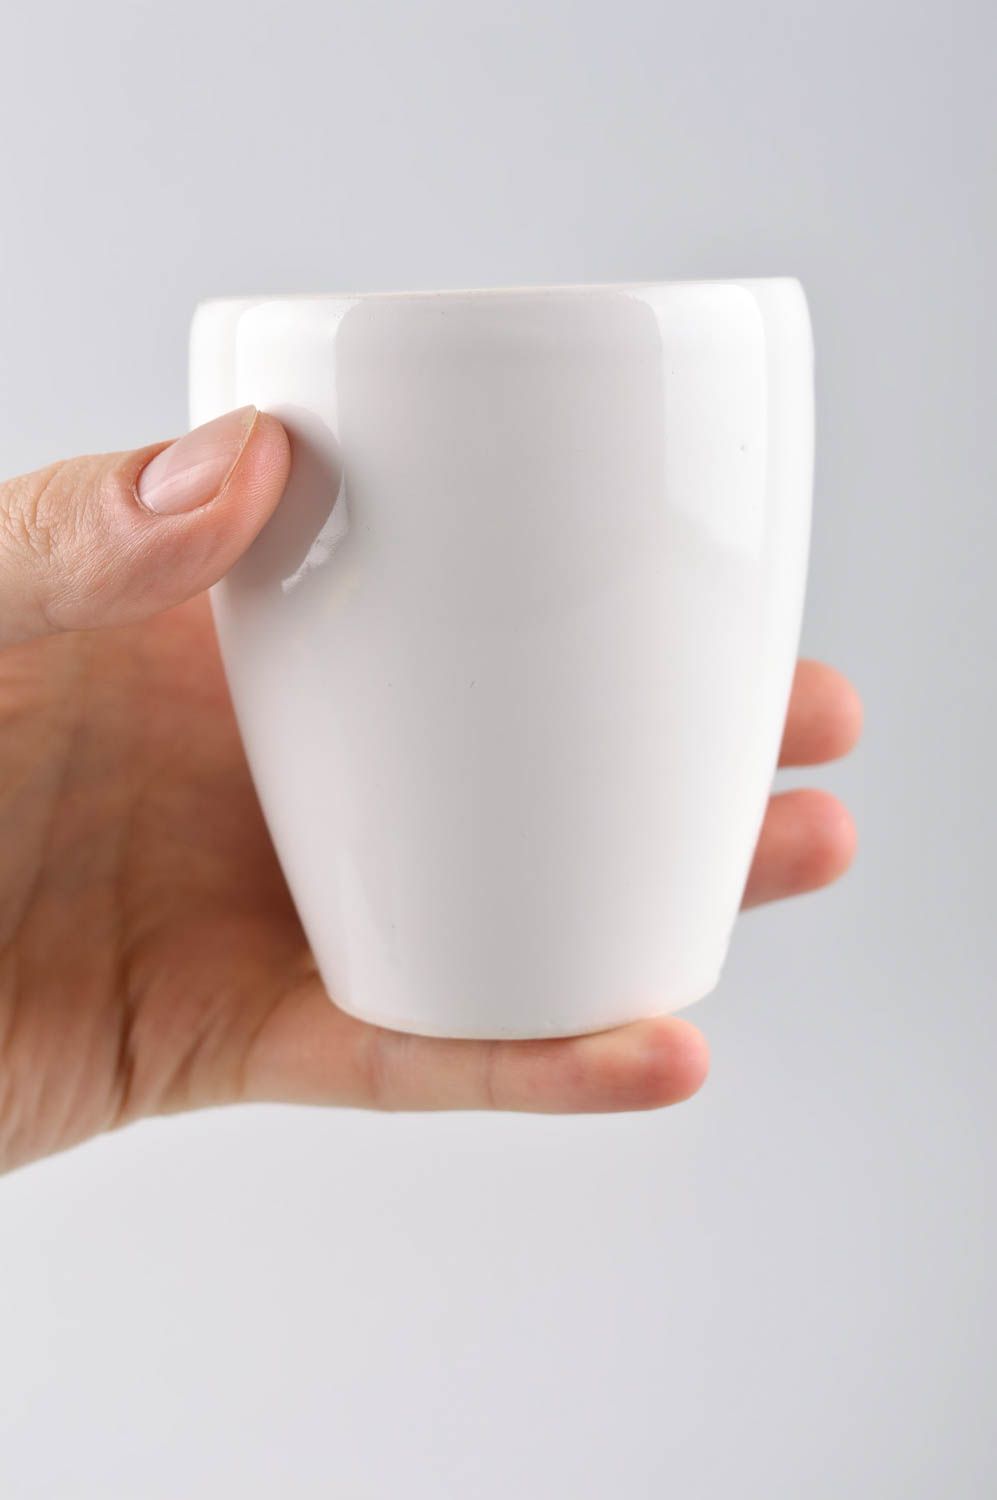 Handmade schöne Teetasse Keramik Tasse buntes Designer Geschirr originell schön foto 5